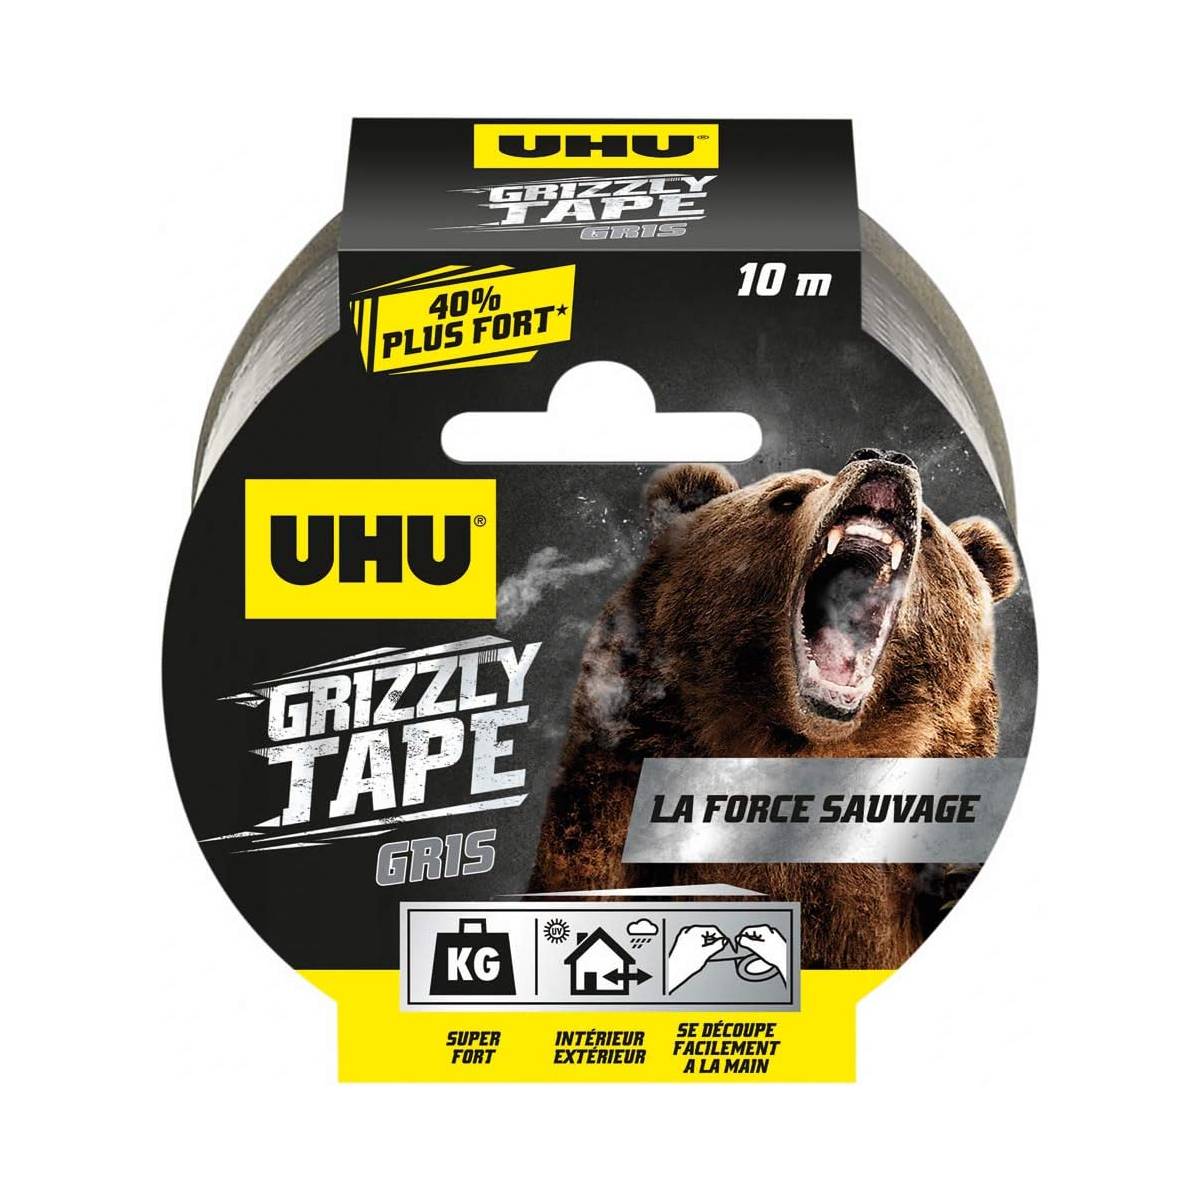 UHU Grizzly tape - Ruban adhésif toilé waterproof pour réparer, gris, 10mx50mm